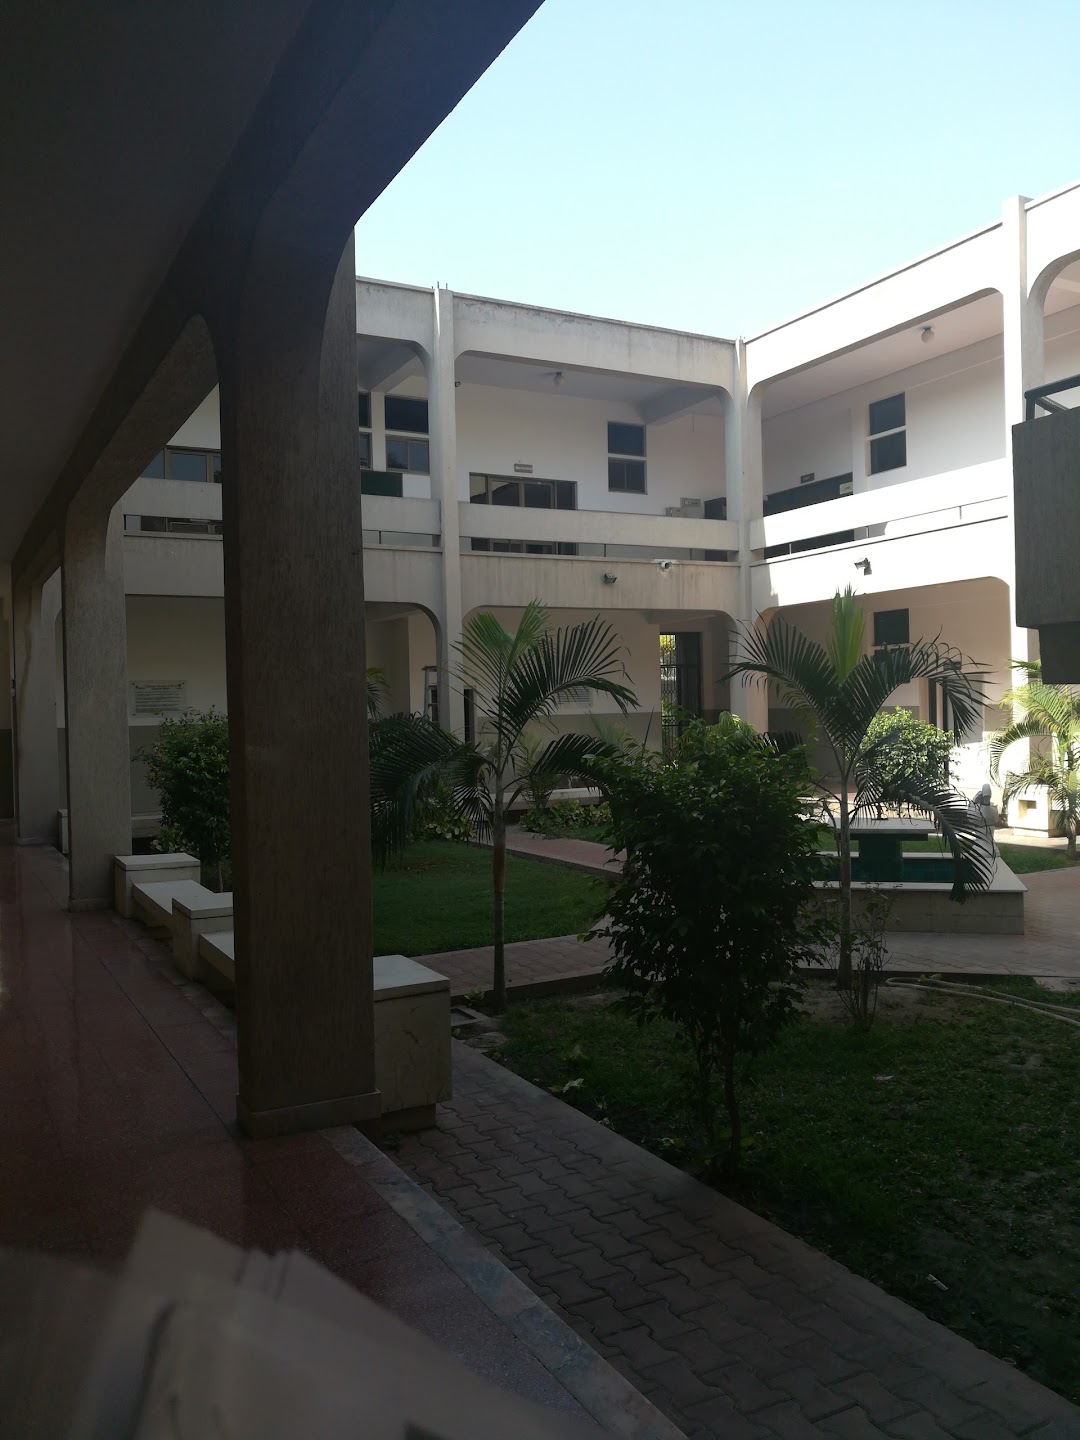 Shalamar Nursing College